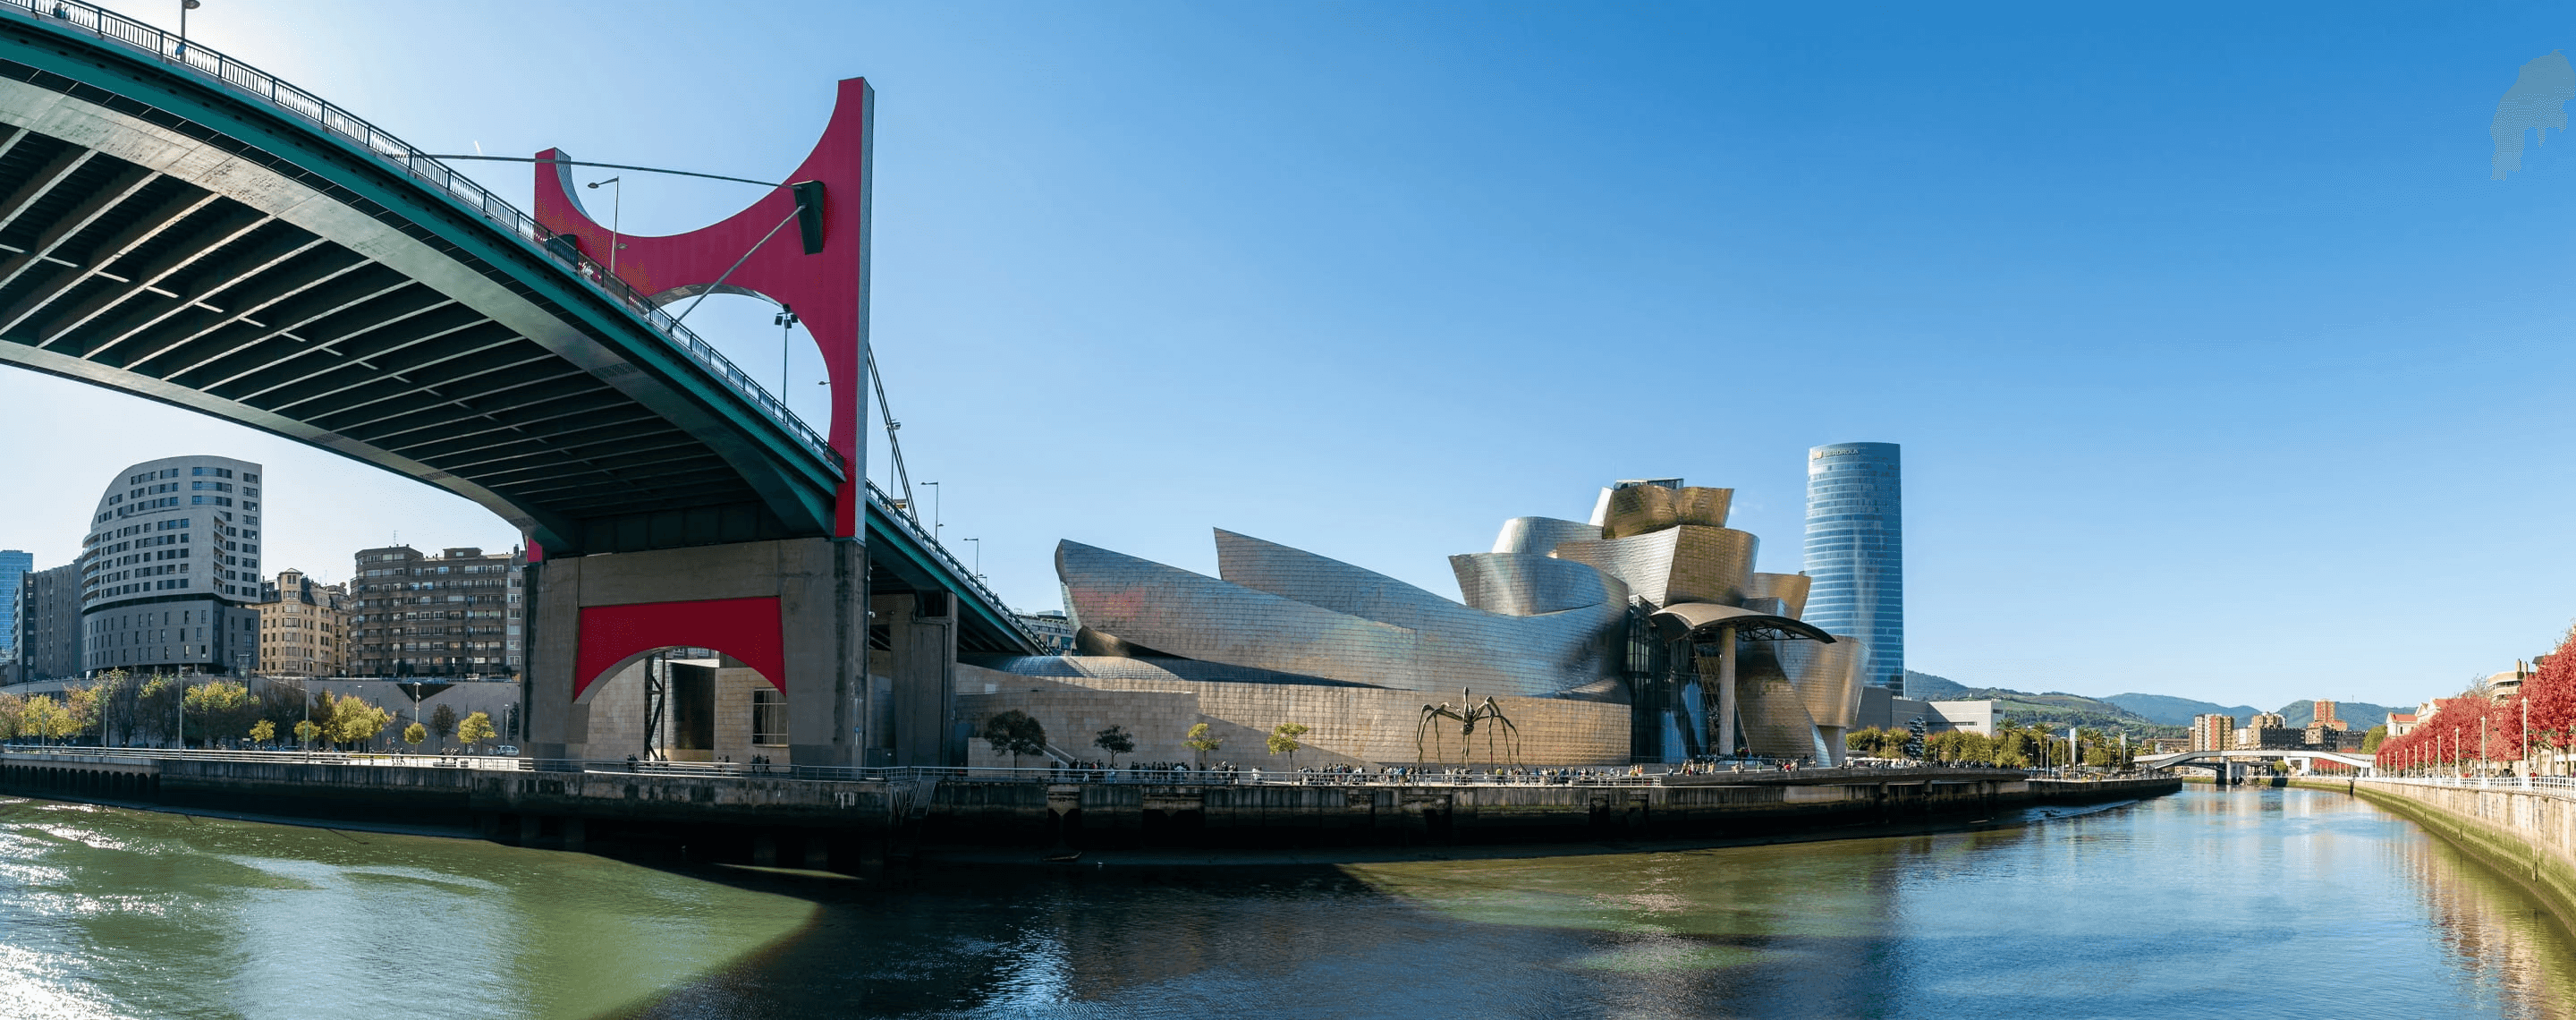 Blick auf das Guggenheim Museum in Bilbao, Spanien